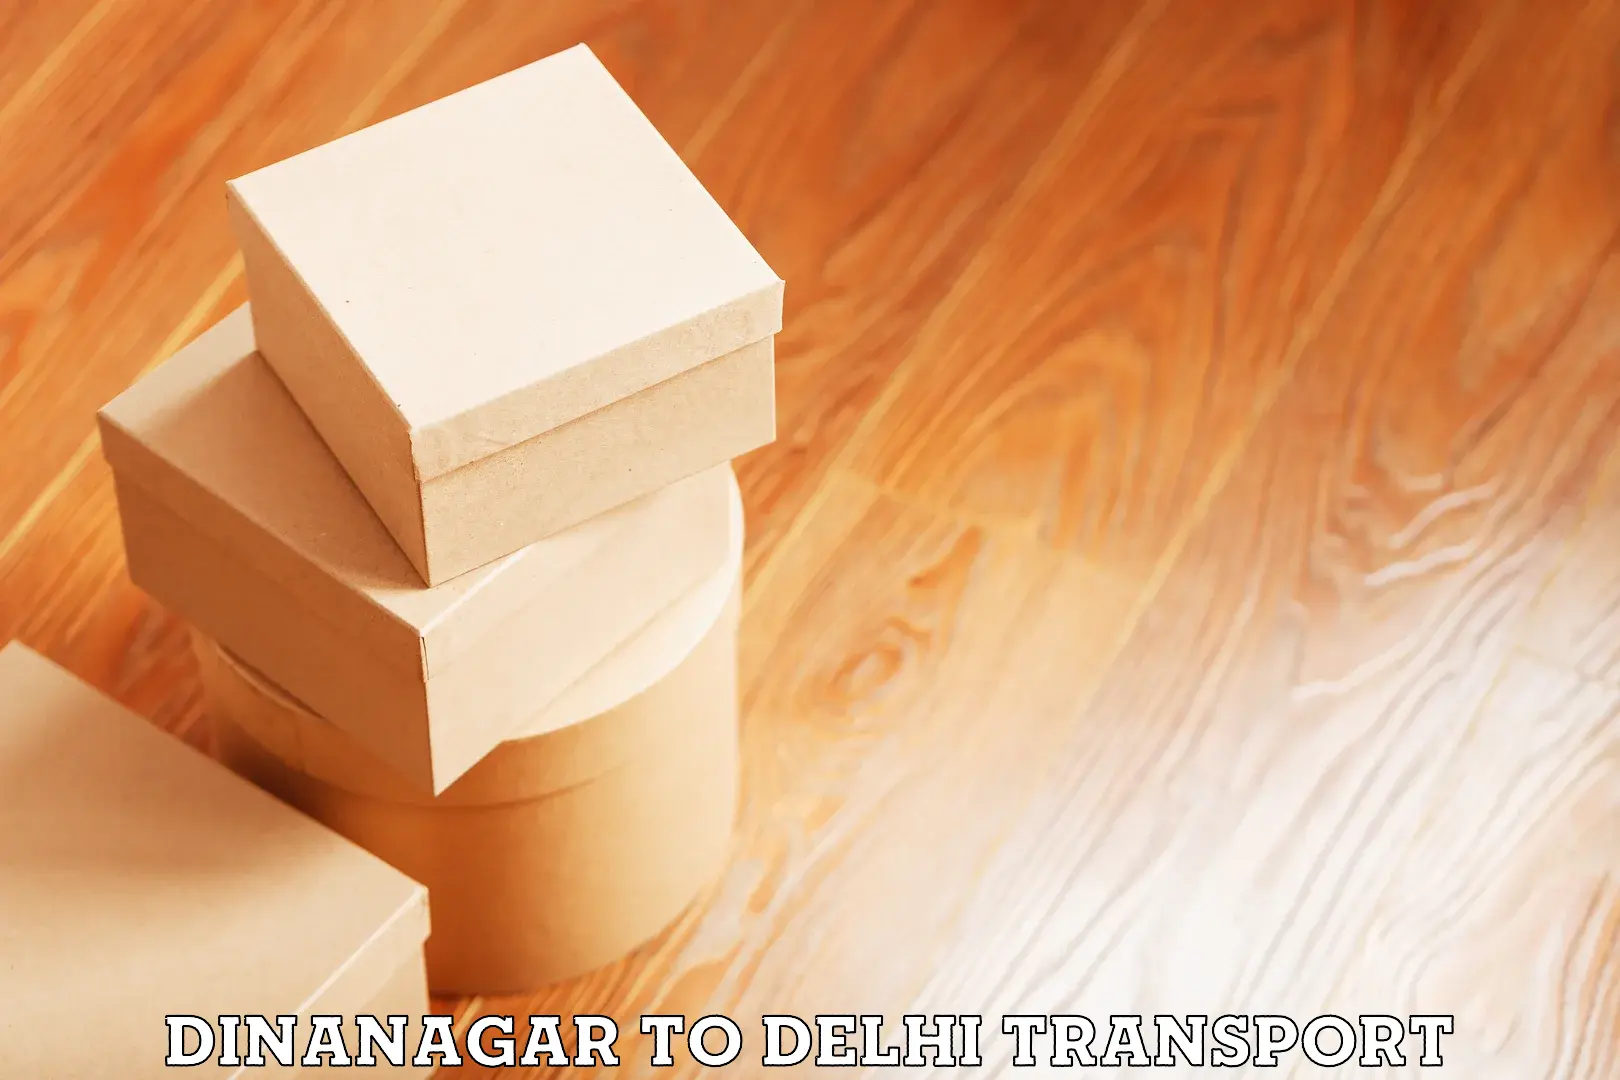 Daily parcel service transport Dinanagar to Delhi